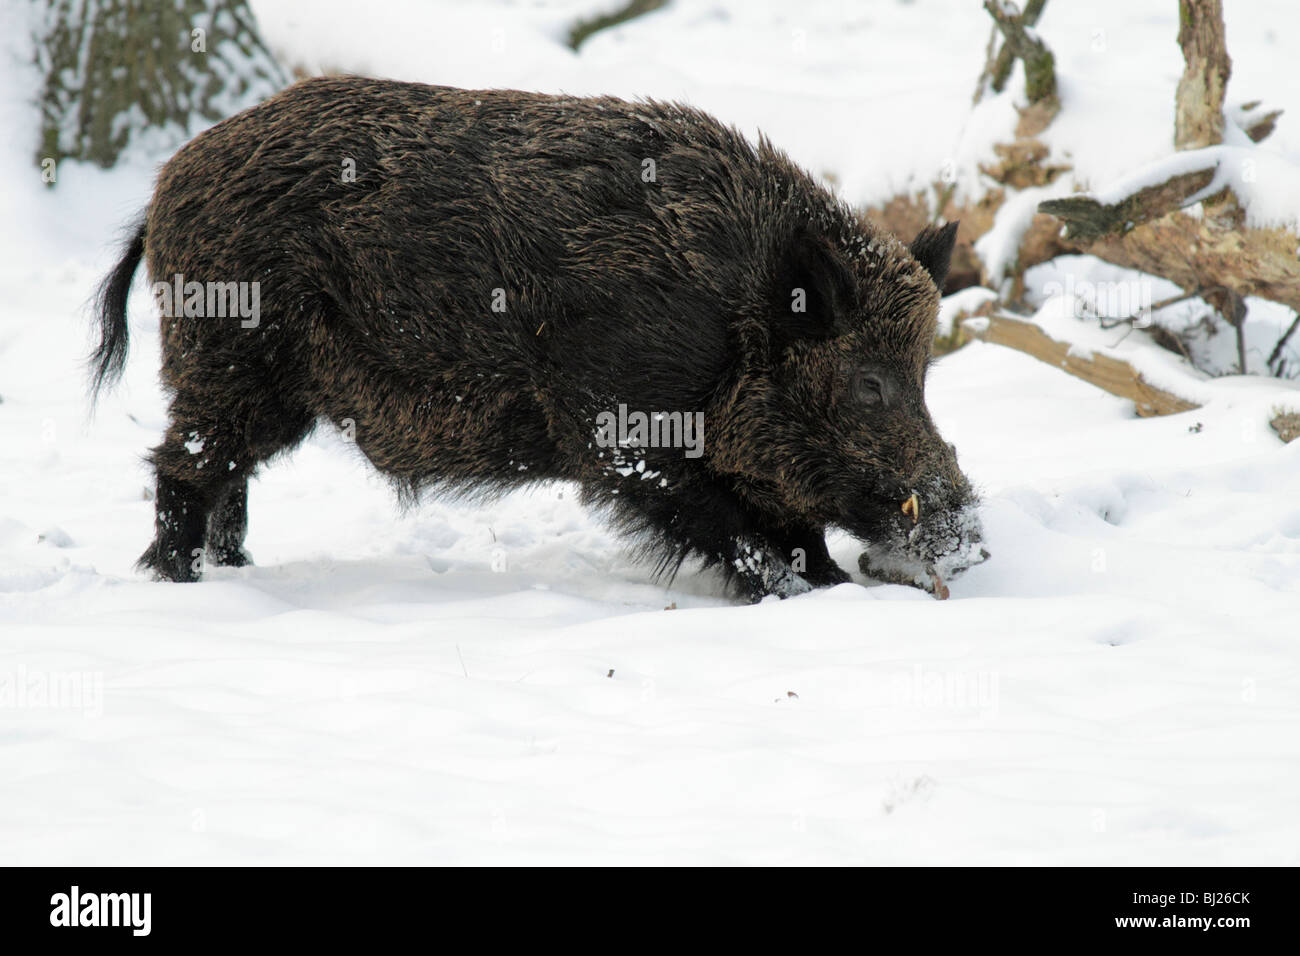 El jabalí, Sus scrofa, buscando alimento en el bosque cubierto de nieve, Alemania Foto de stock